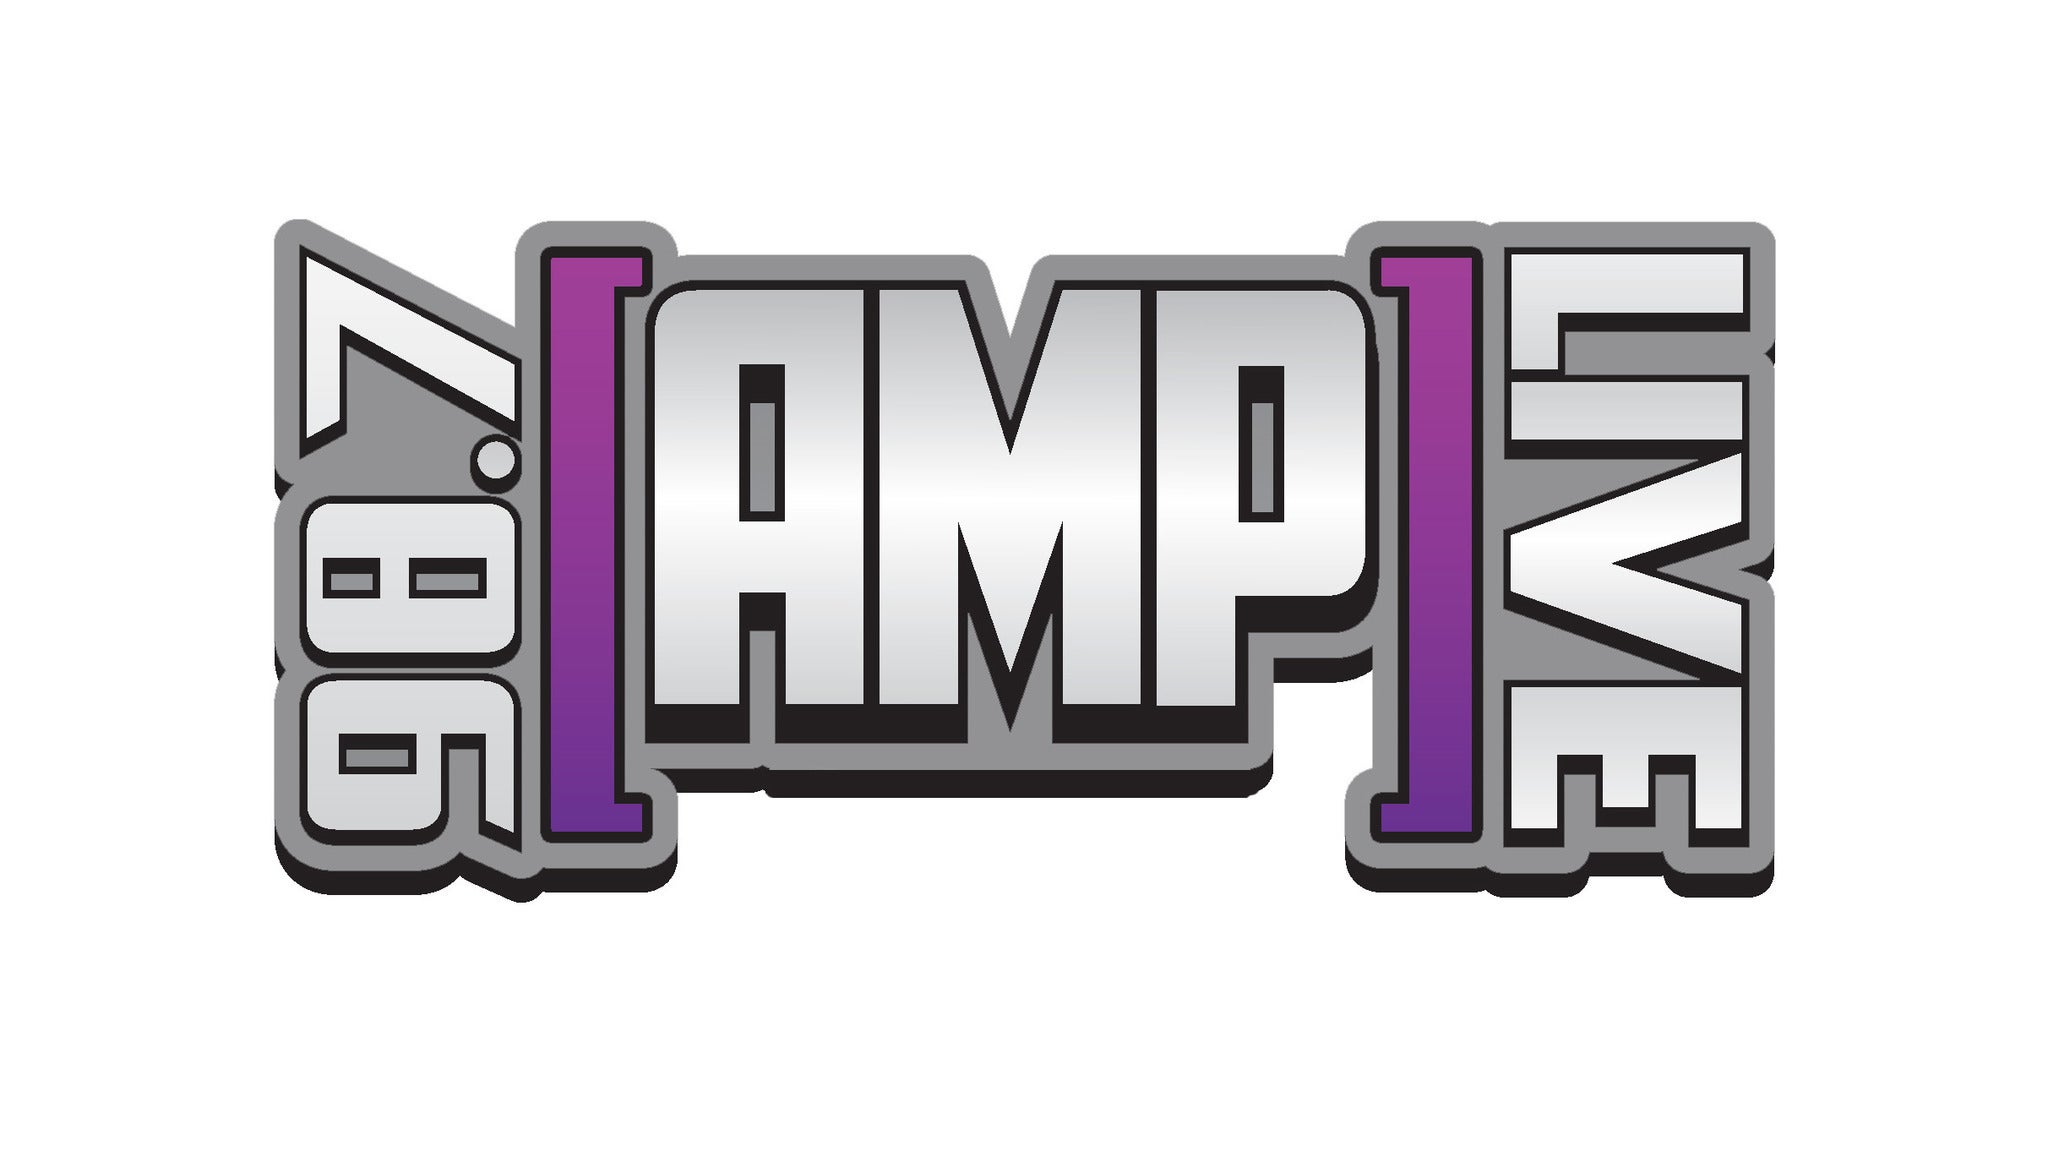 Amp Live presale information on freepresalepasswords.com